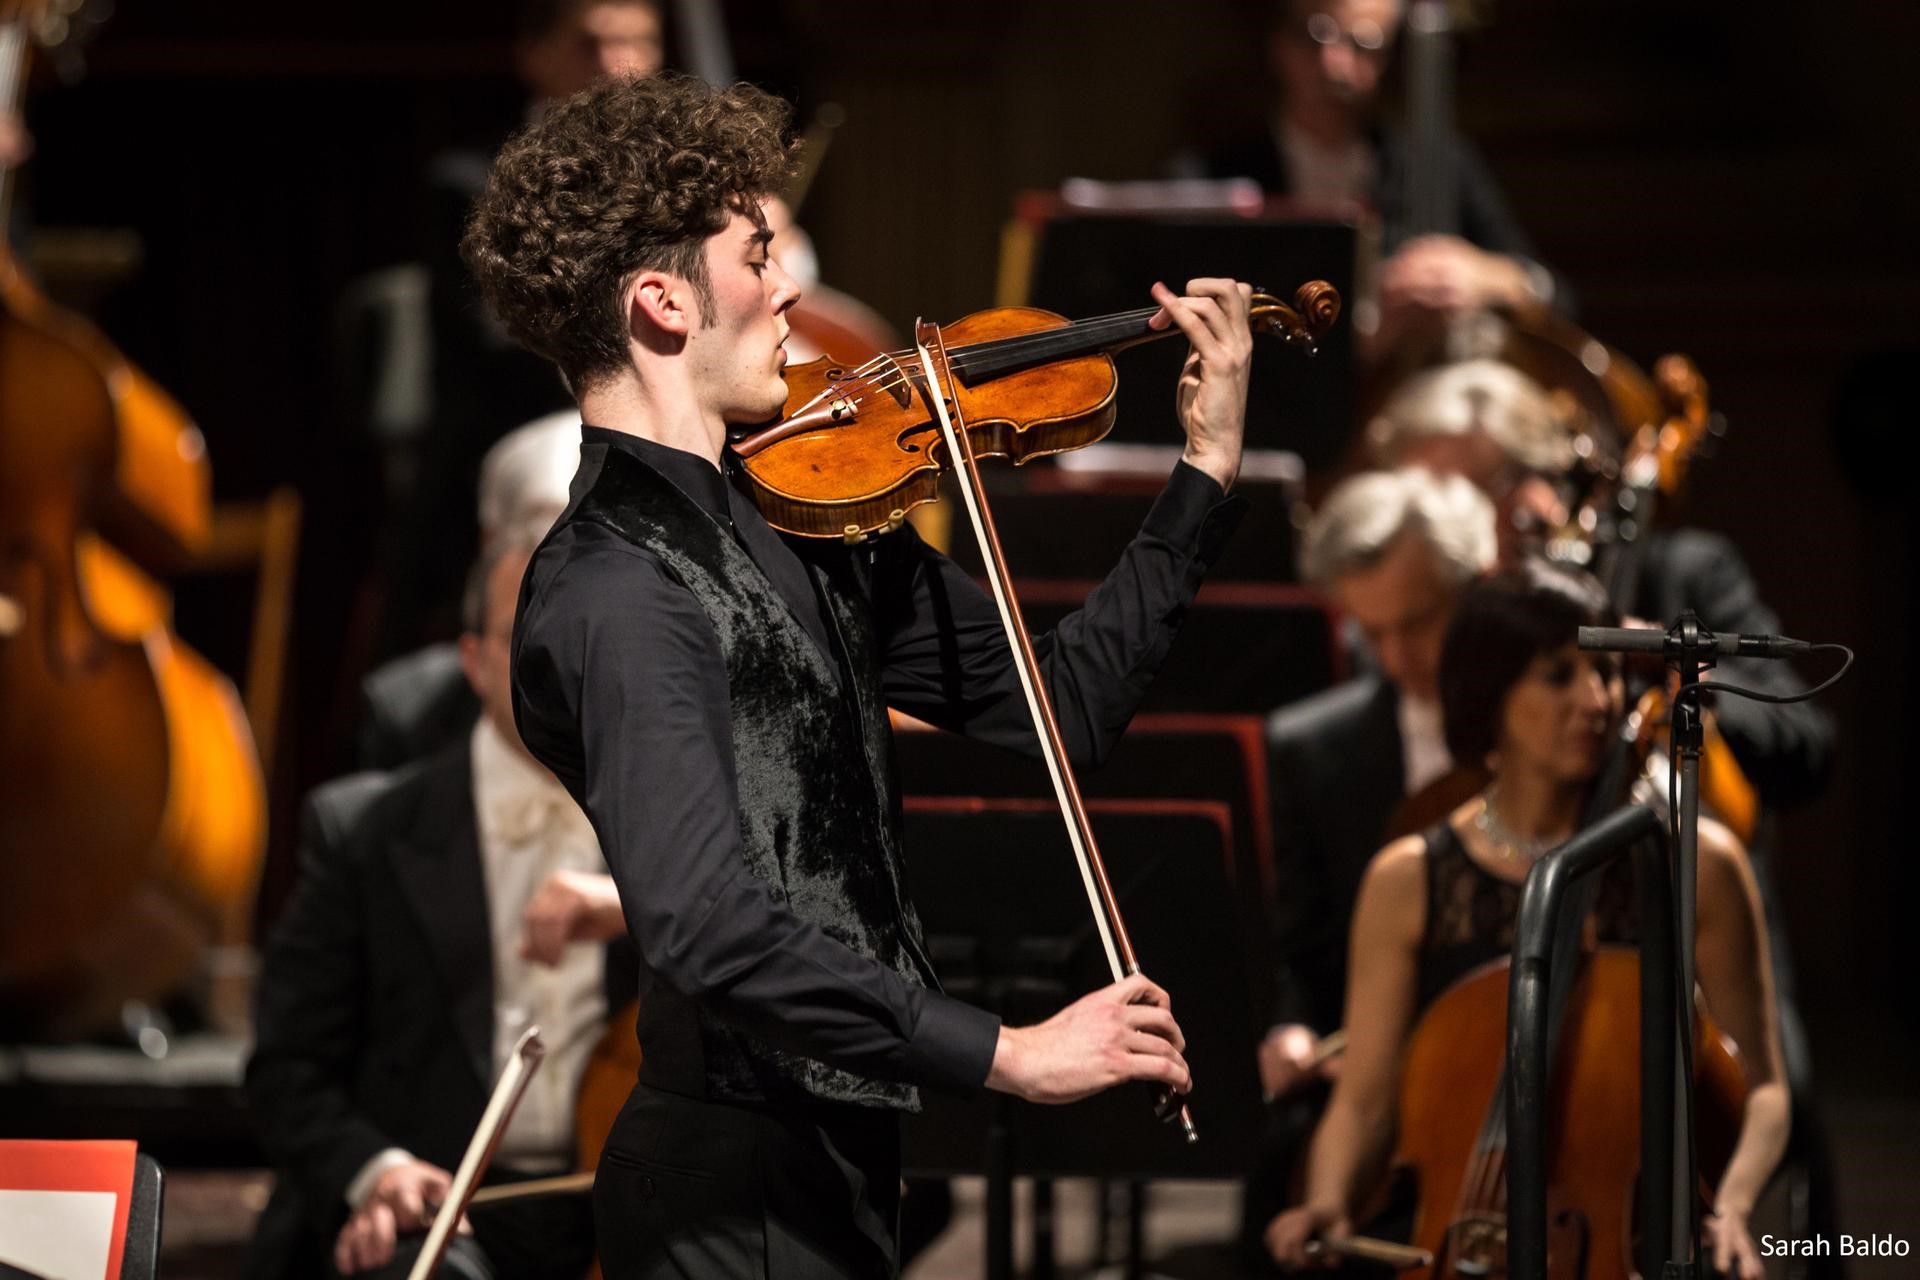 Ad Arezzo il violino di Giovanni Andrea Zanon  esegue “Le quattro stagioni” di Vivaldi